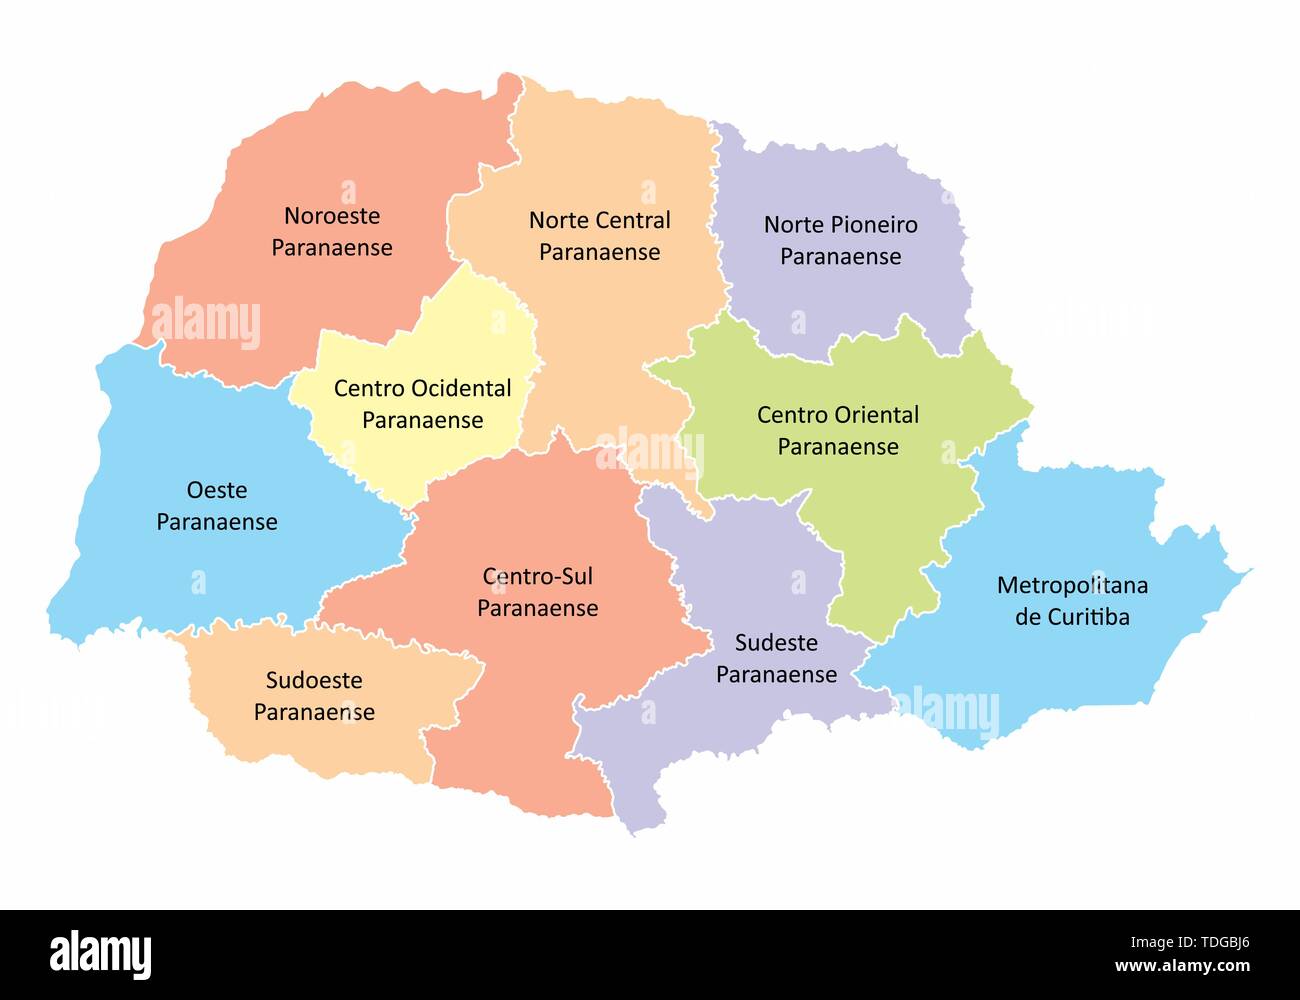 Une carte en couleurs de l'Etat du Parana divisée en régions, Brésil Illustration de Vecteur